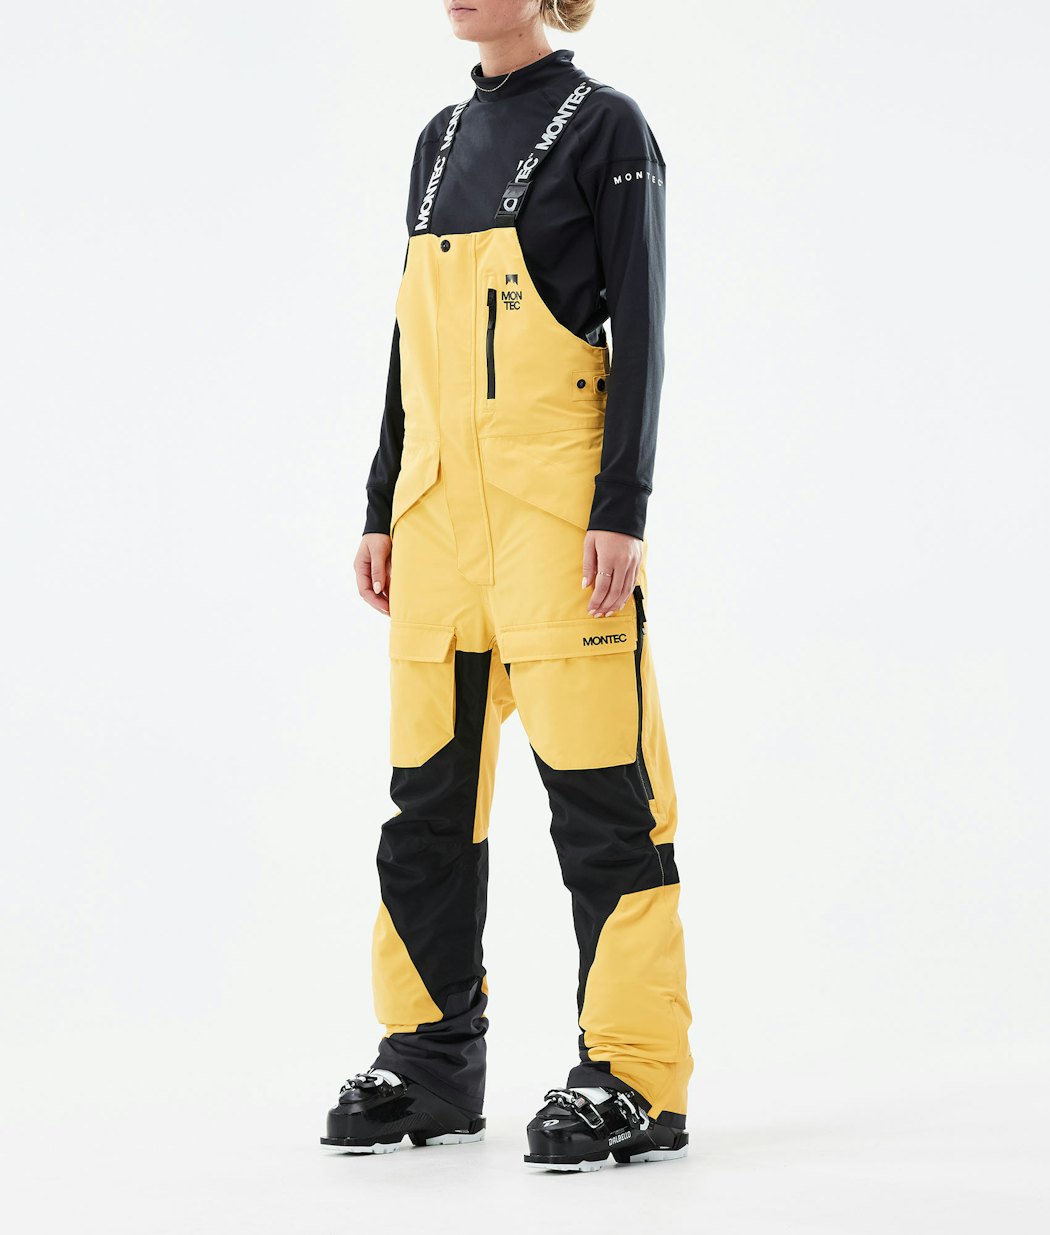 Montec Fawk W Women's Ski Pants Yellow/Black